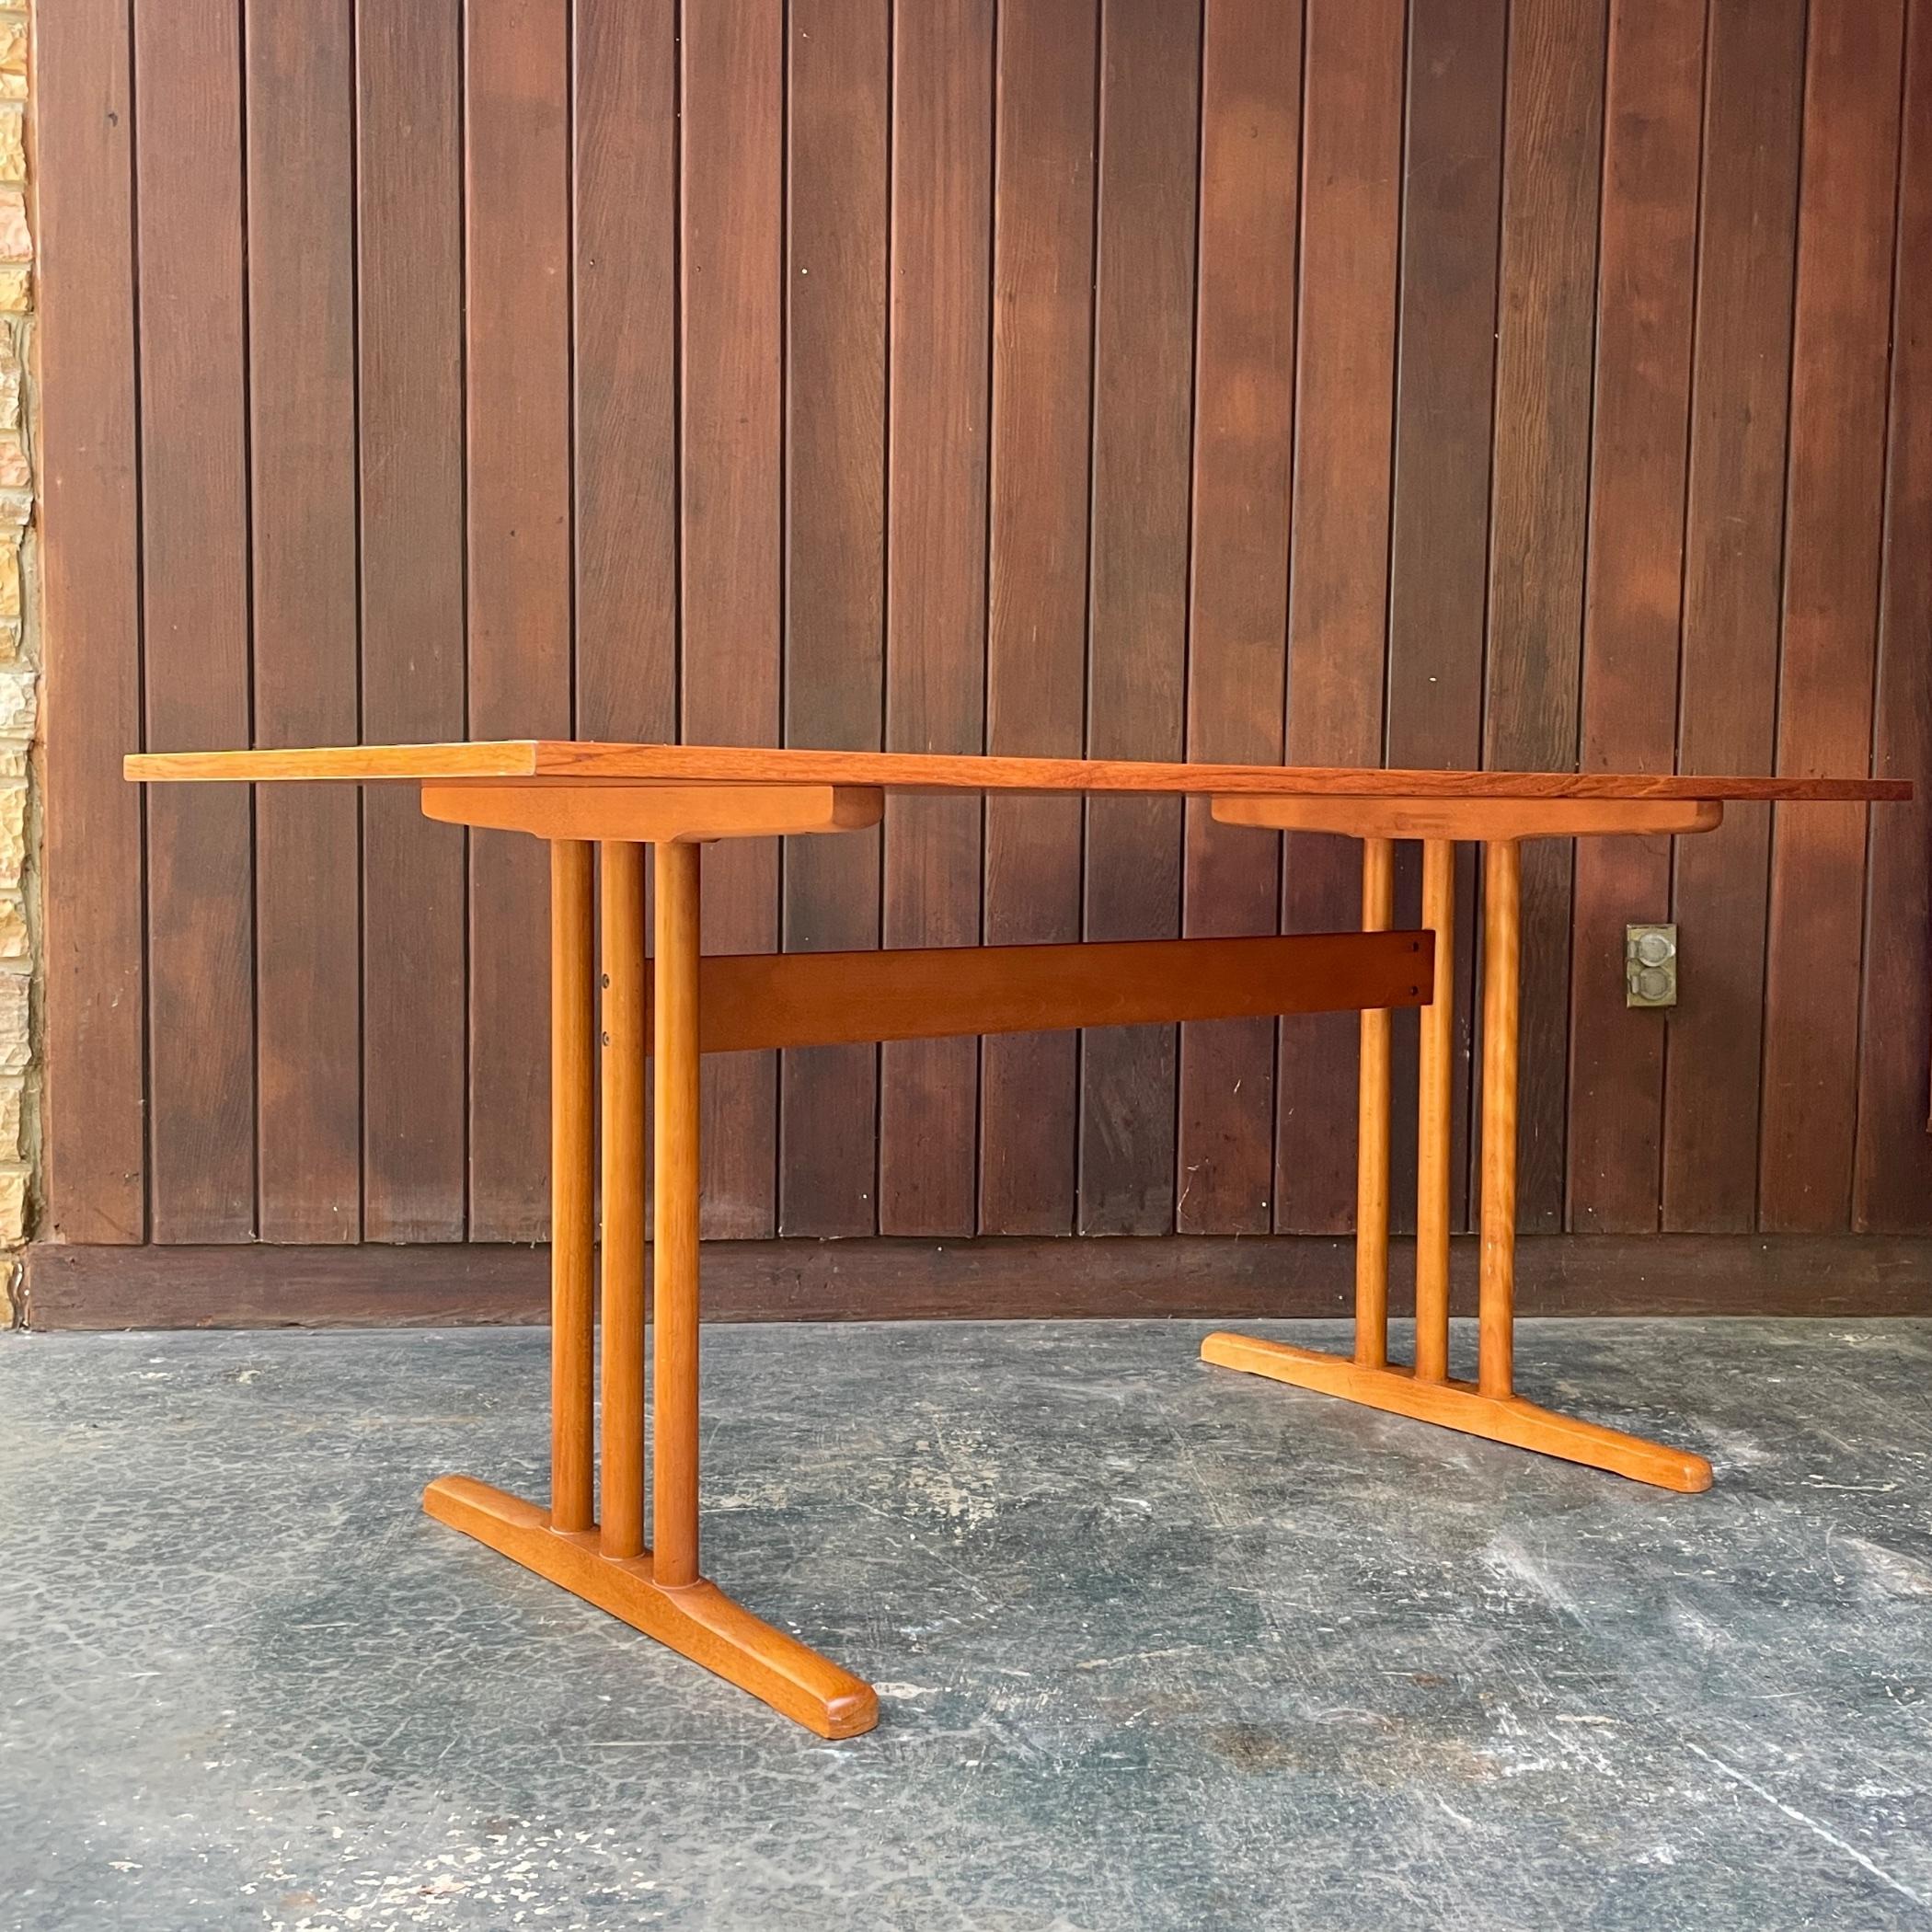 Table de travail danoise du milieu du siècle, lourde, solide et stable, qui peut également être utilisée comme table à manger pour deux personnes.

Le plateau est en bois massif avec un placage en teck, présentant beaucoup d'usure ; quelques